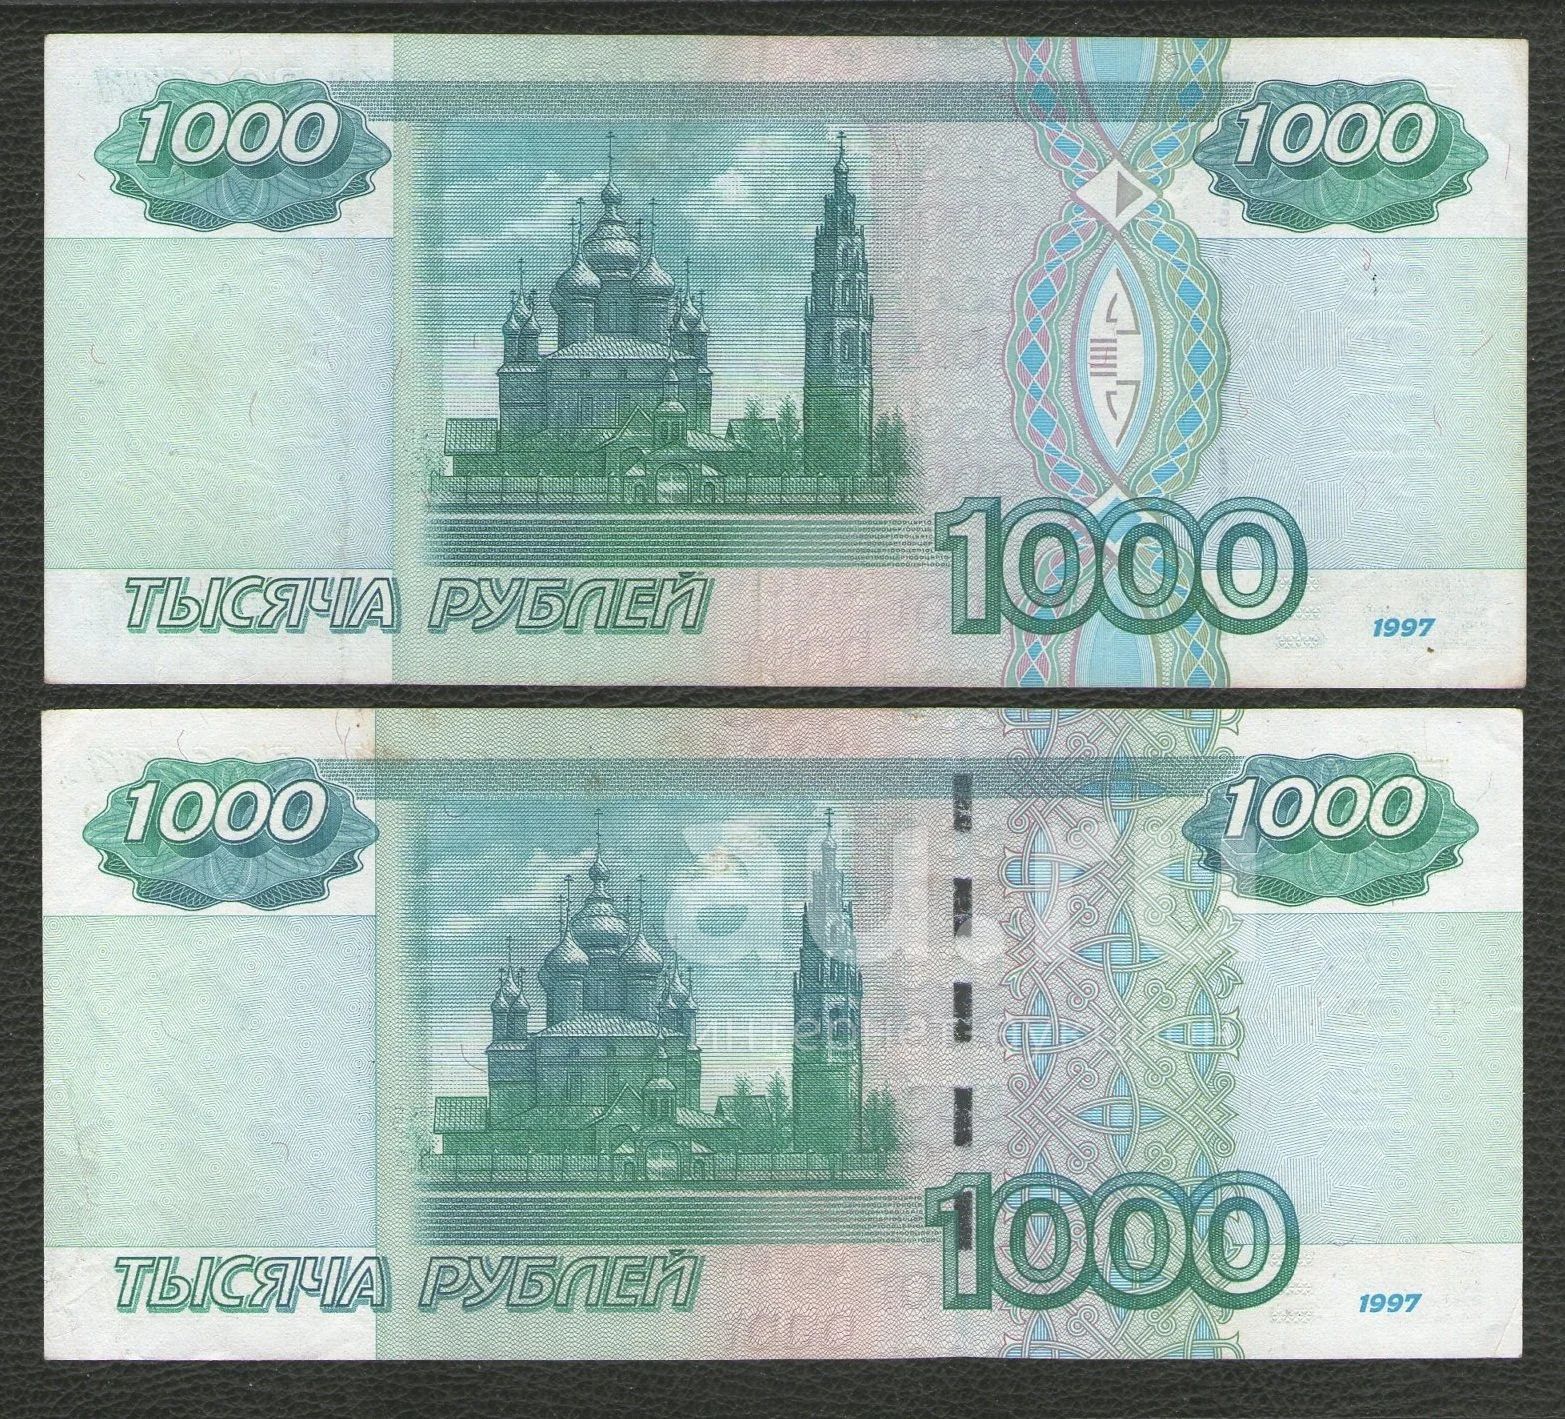 1000 рублей 2004. 1000 Рублей 1997 года. 1000 Рублей первый выпуск. Тысяча рублей первый выпуск. Первый выпуск 1000 рублей 1997.